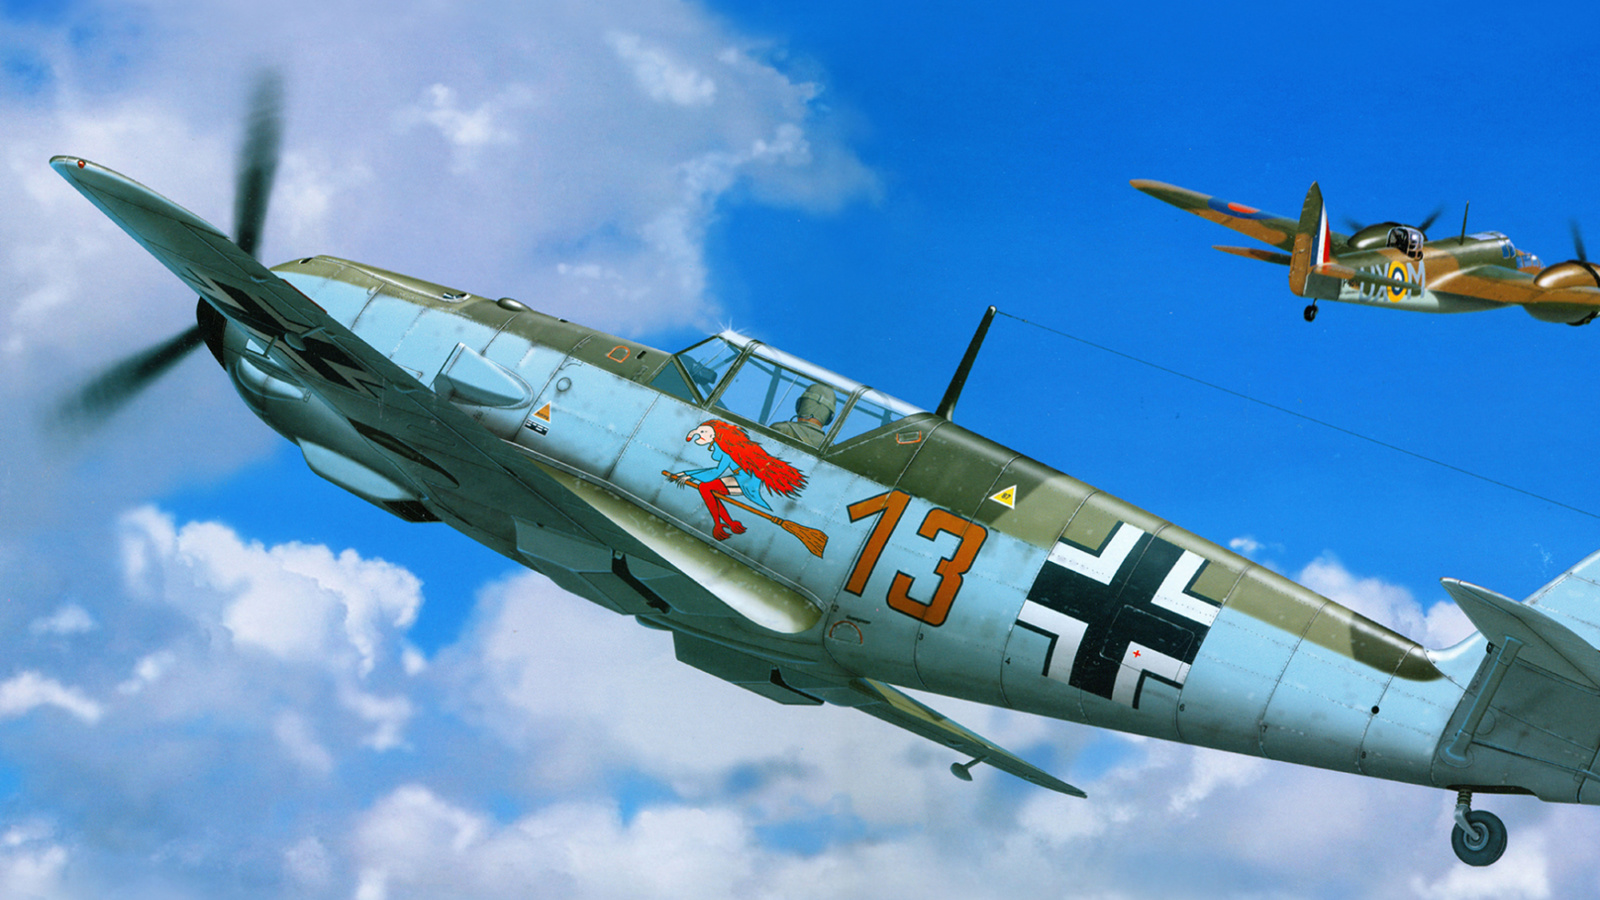 Messerschmitt Bf 109E wallpaper 1600x900